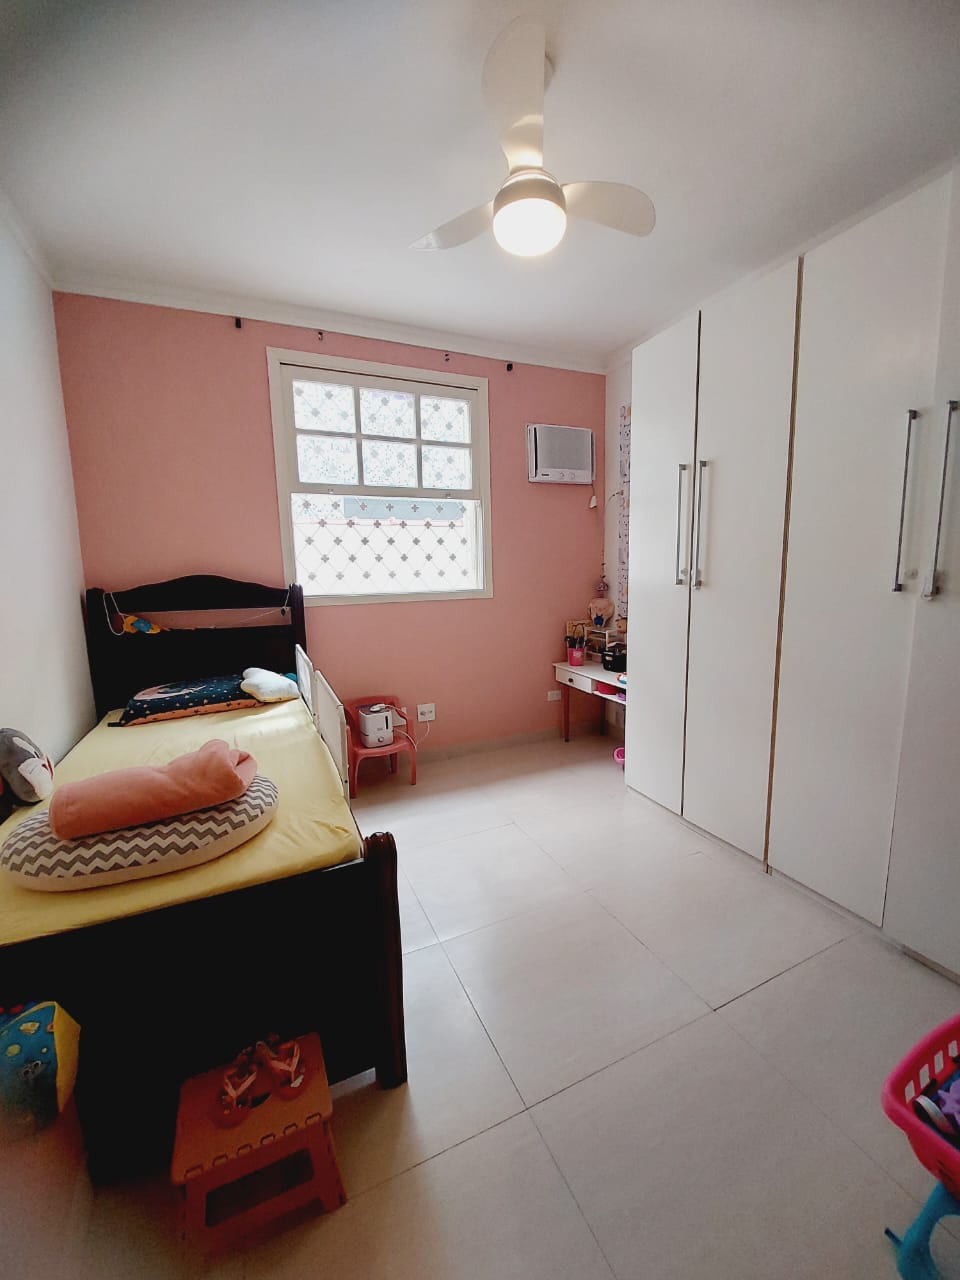 Foto do Imóvel - Lindo apartamento térreo de 02 dorms na Ponta da Praia em Santos/SP